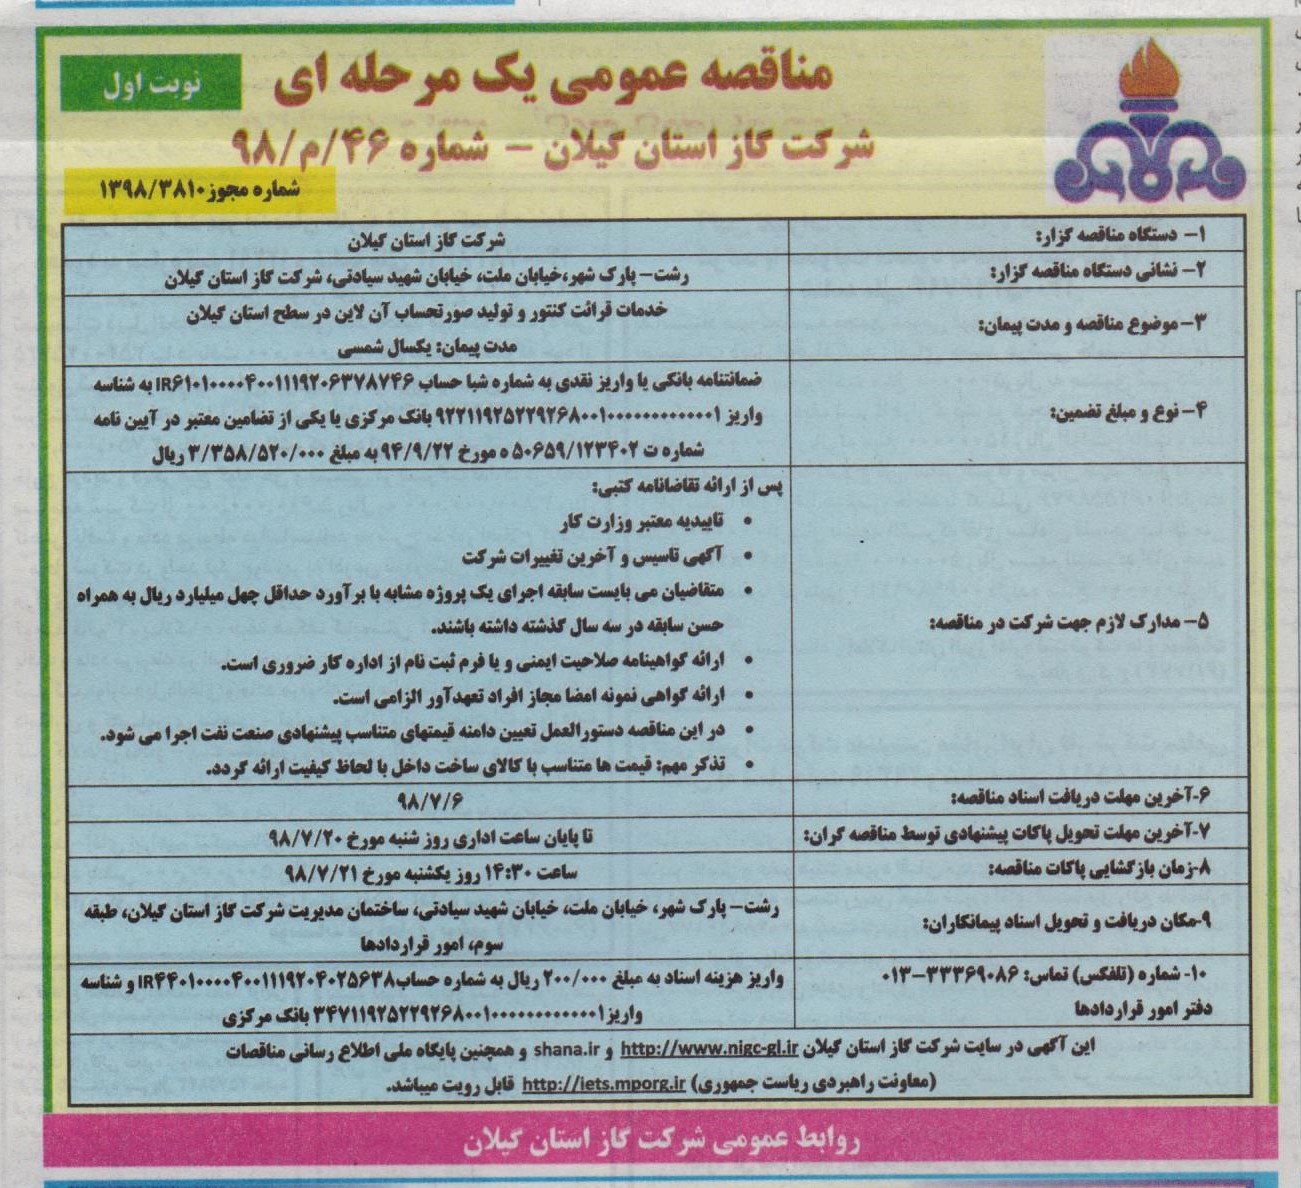 خدمات قرائت و تولید صورتحساب آنلاین در سطح استان گیلان - 27 شهریور